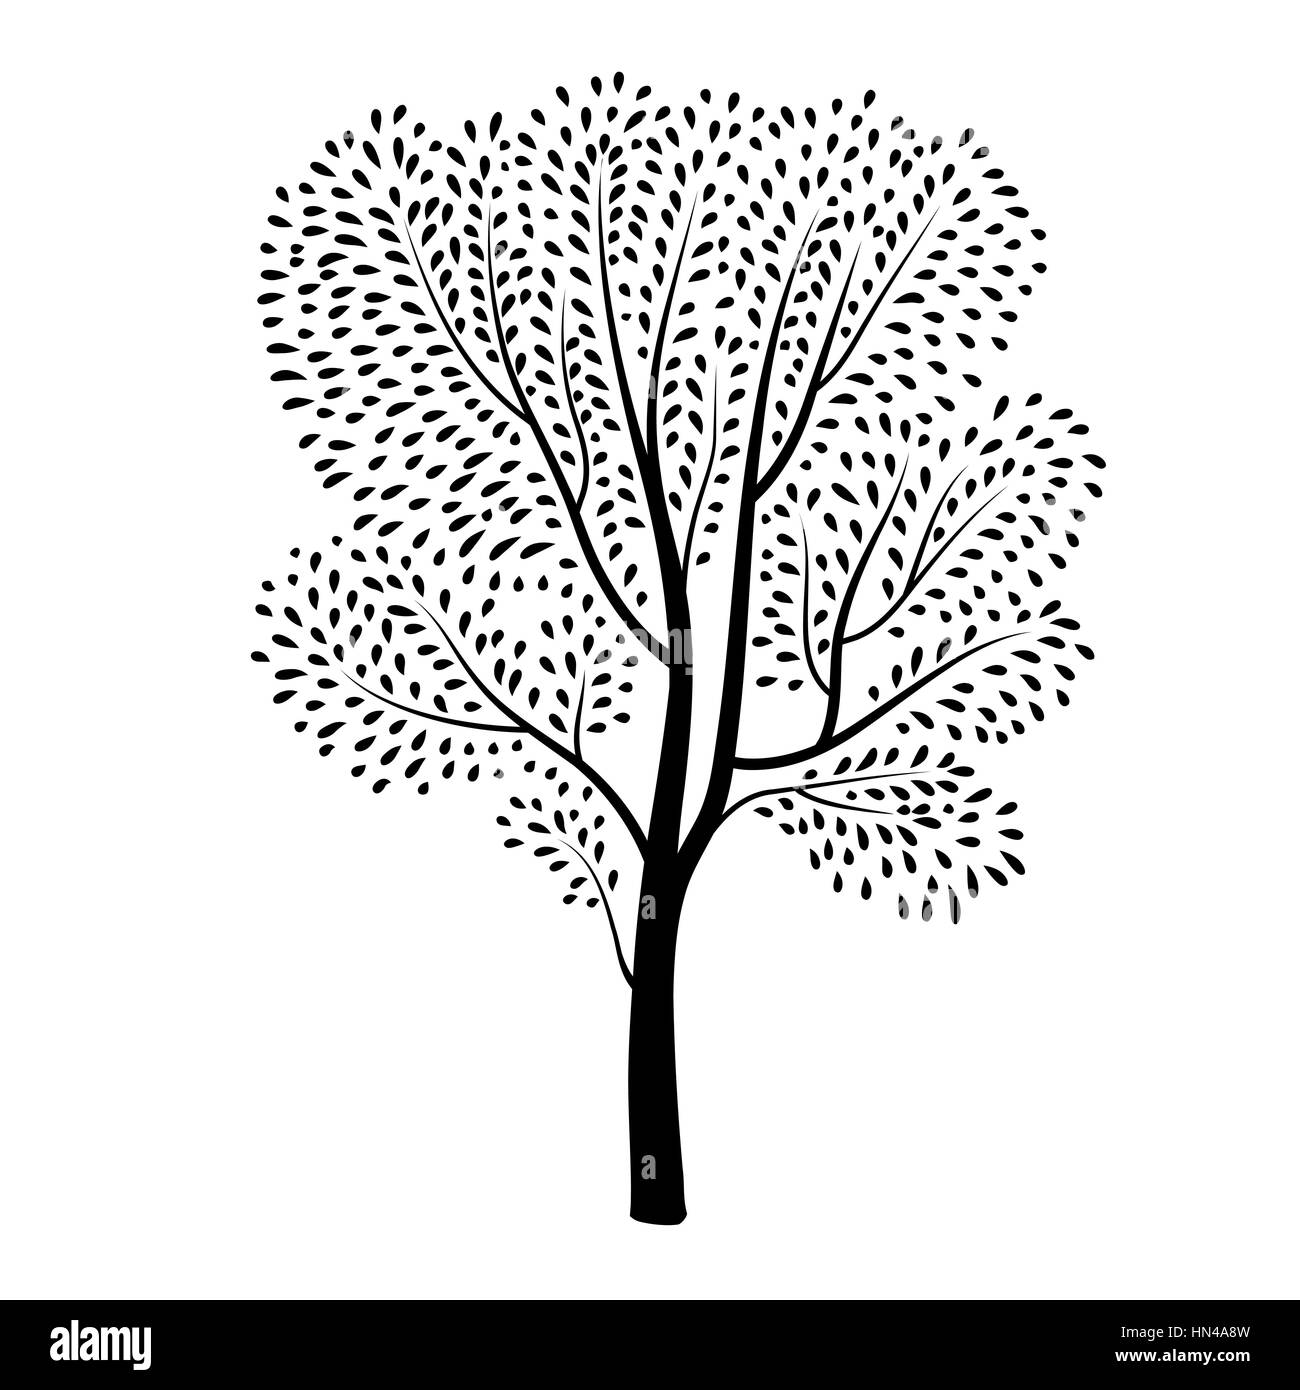 Baum Silhouette isoliert. Pflanze mit Blättern. Frühling Natur wildlife Design element Blooming Tree Hintergrund Stock Vektor